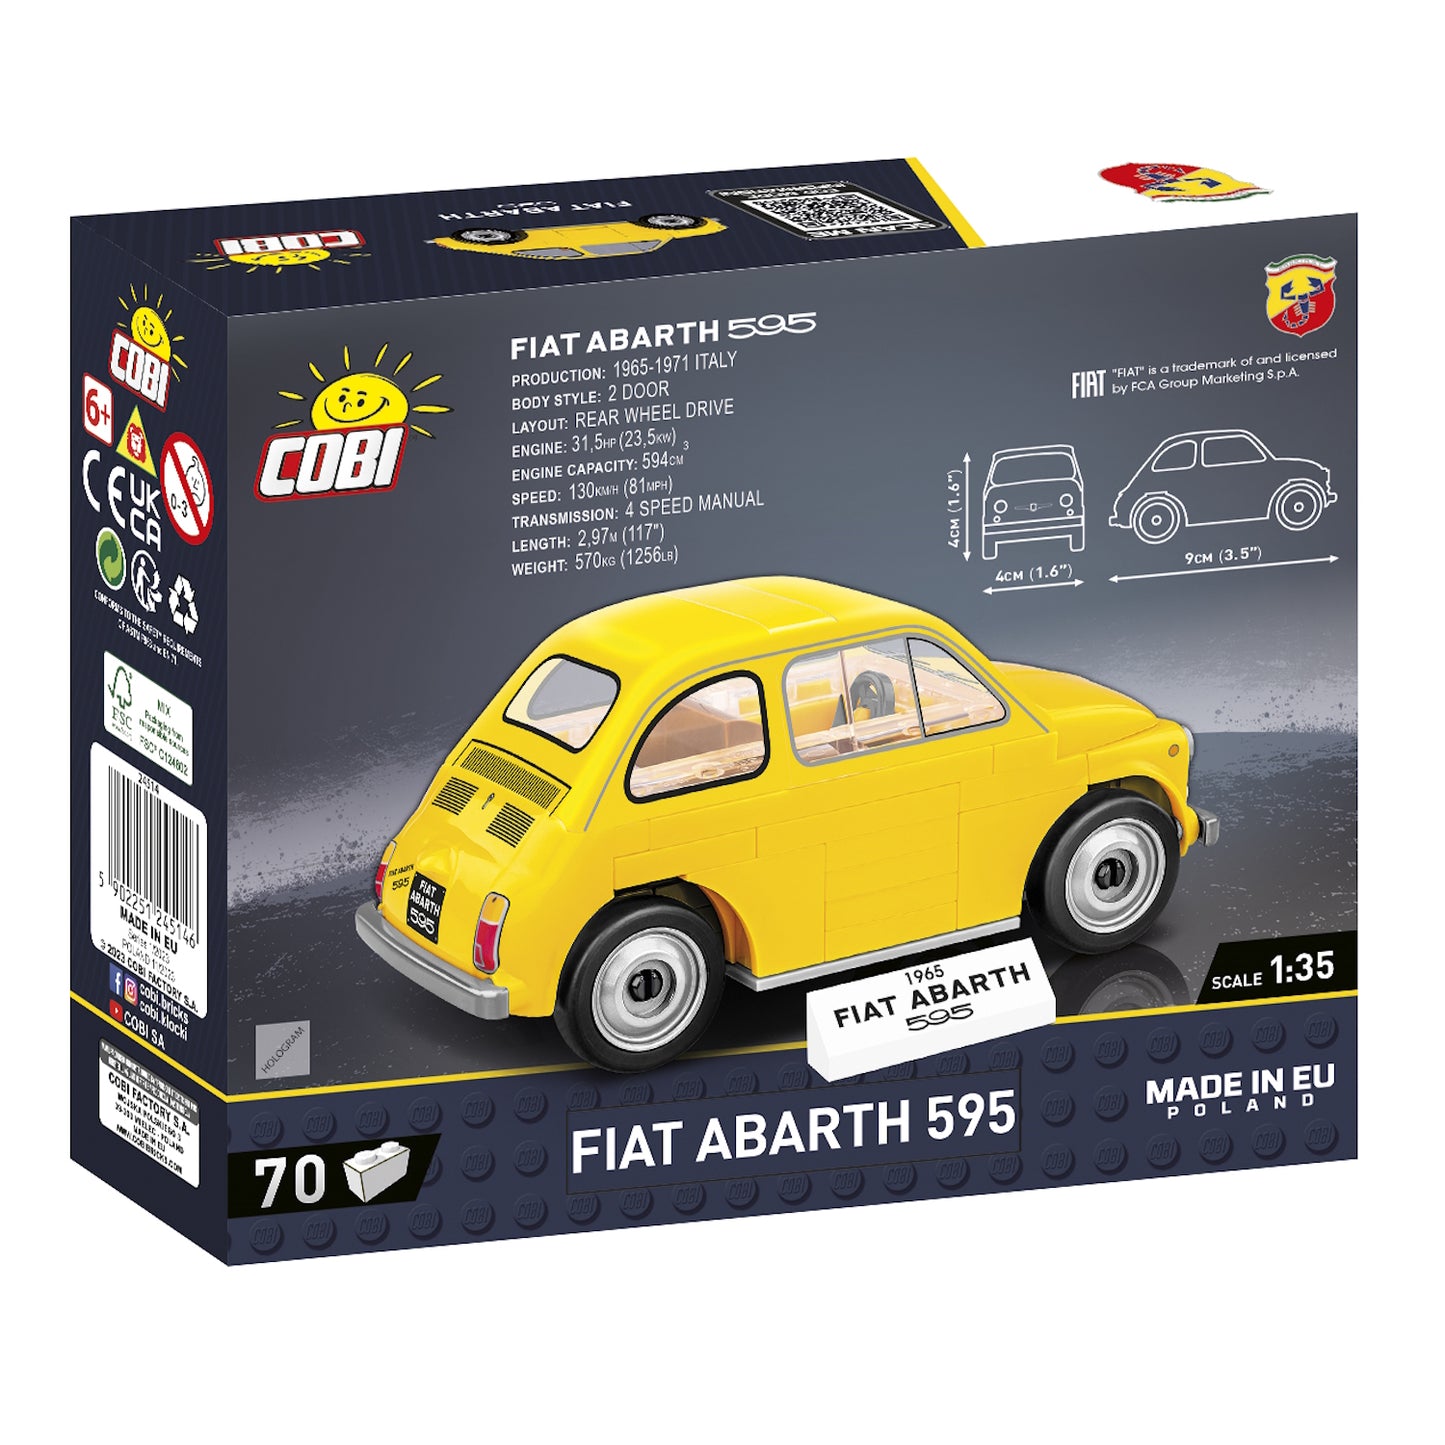 Cobi Fiat Abarth 595 (COBI-24514)